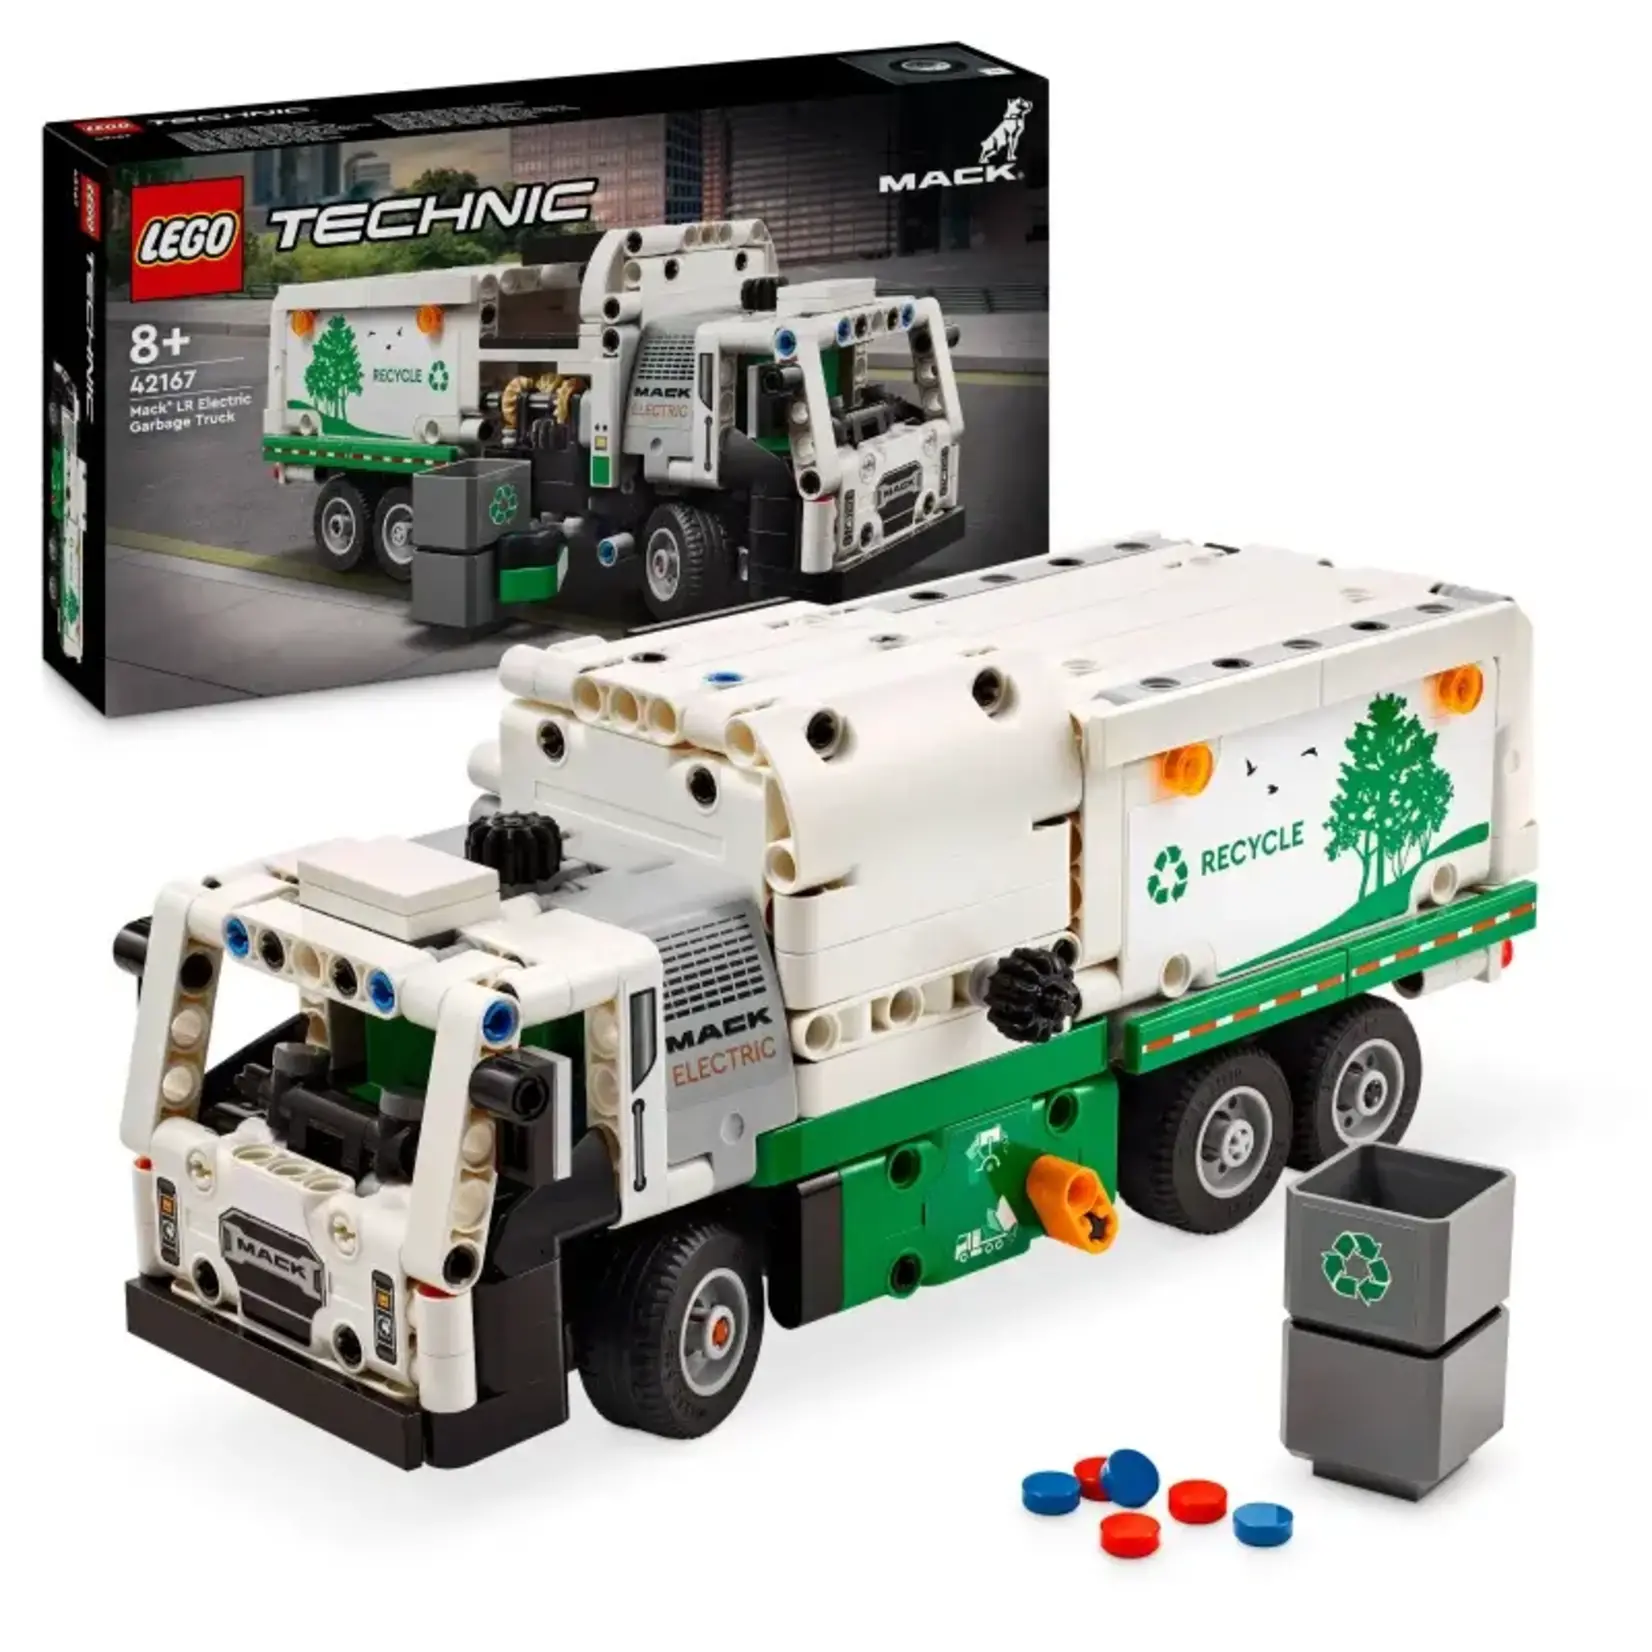 LEGO Mack LR Elektrische vuilniswagen - 42167